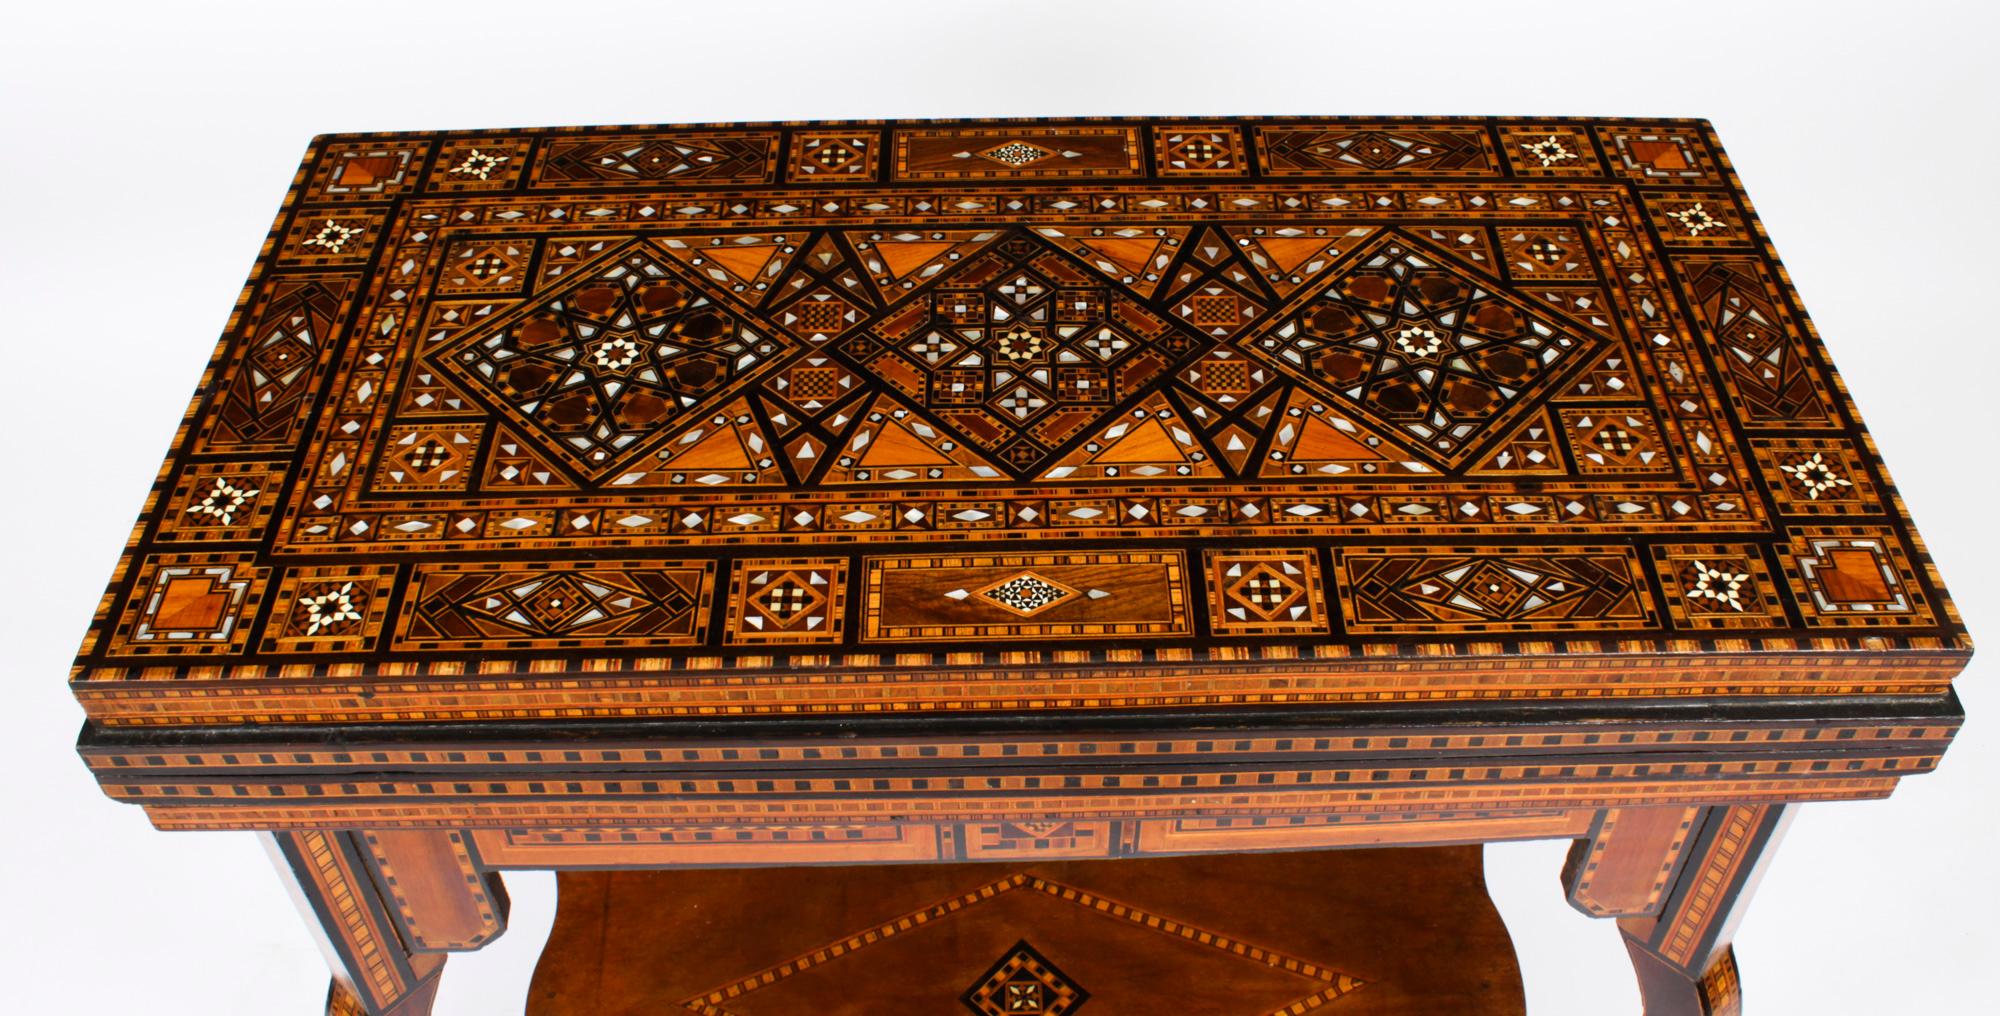 Bois de feuillus Ancienne table de jeu incrustée syrienne de Syrie, jeu d'échecs et backgammon, début du 20e siècle